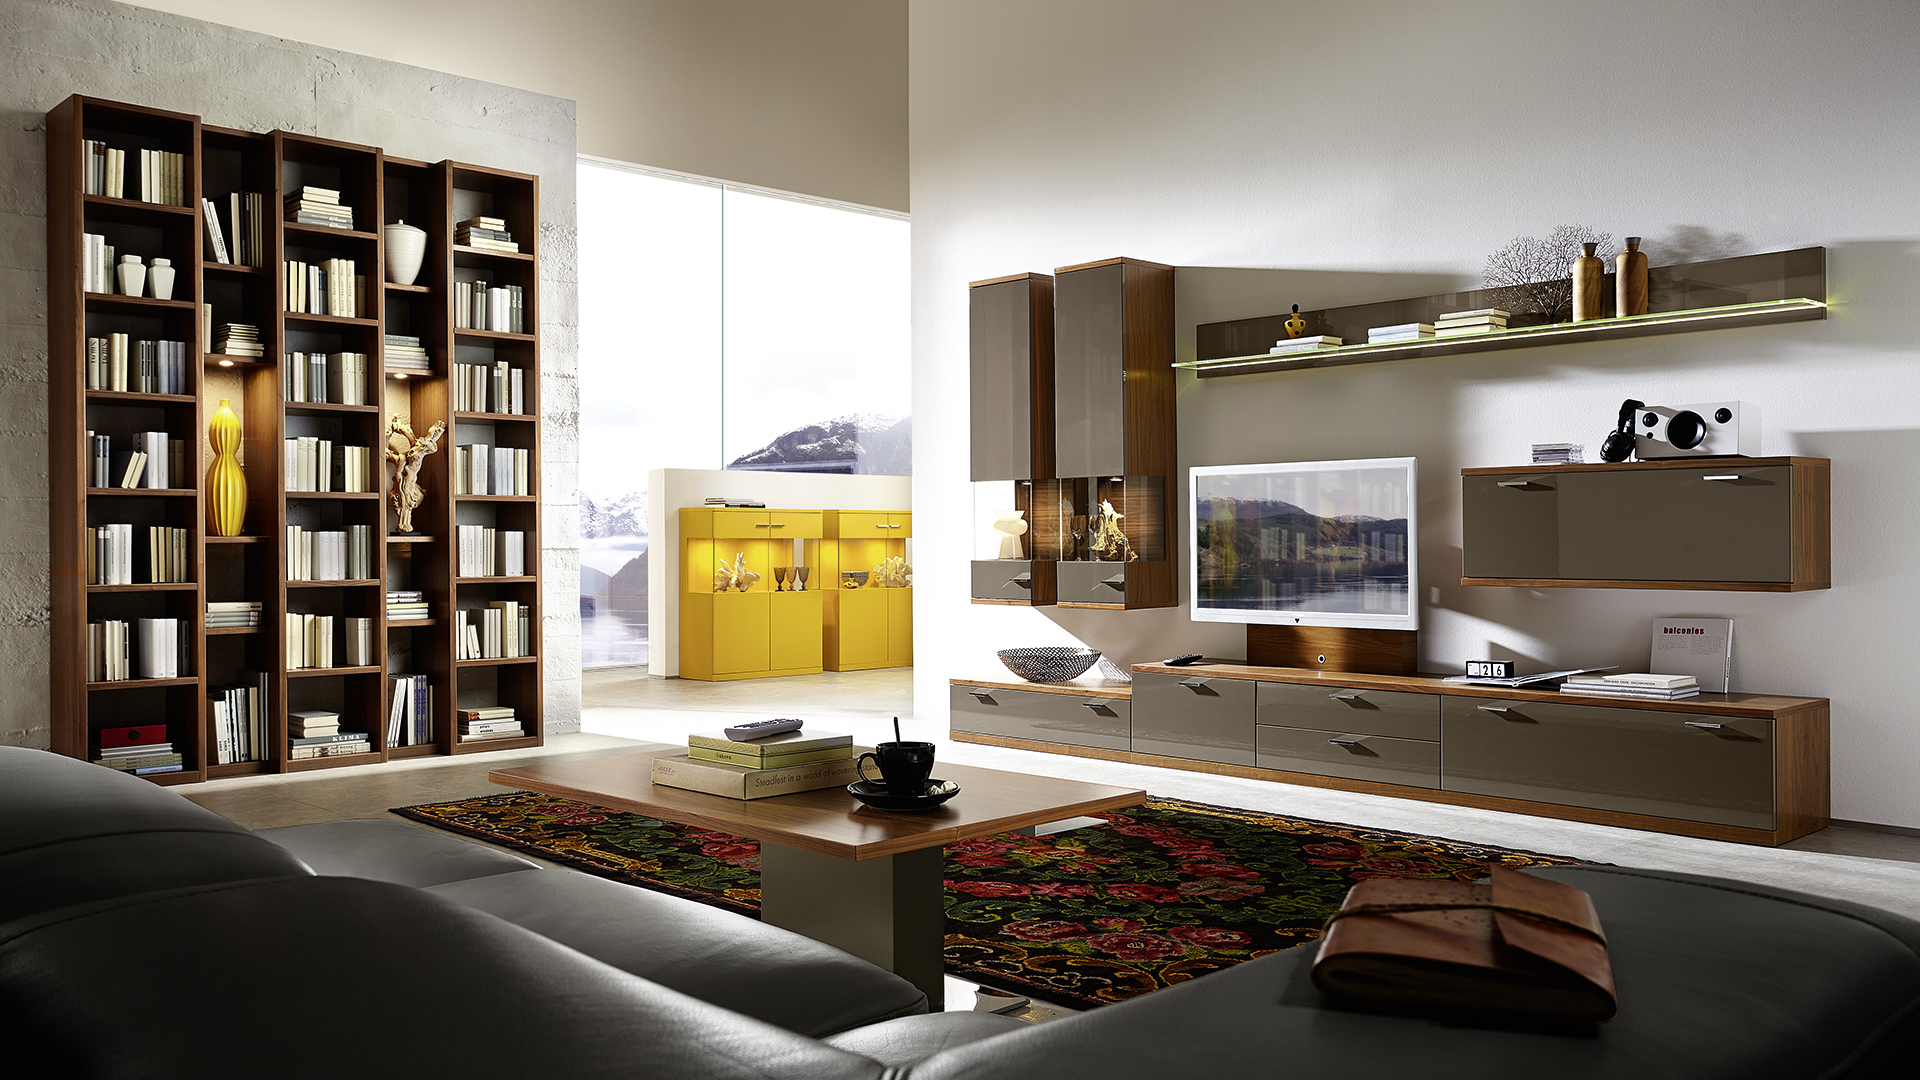 Modulair systeem voor het ontwerpen van een boekopslagruimte in de woonkamer